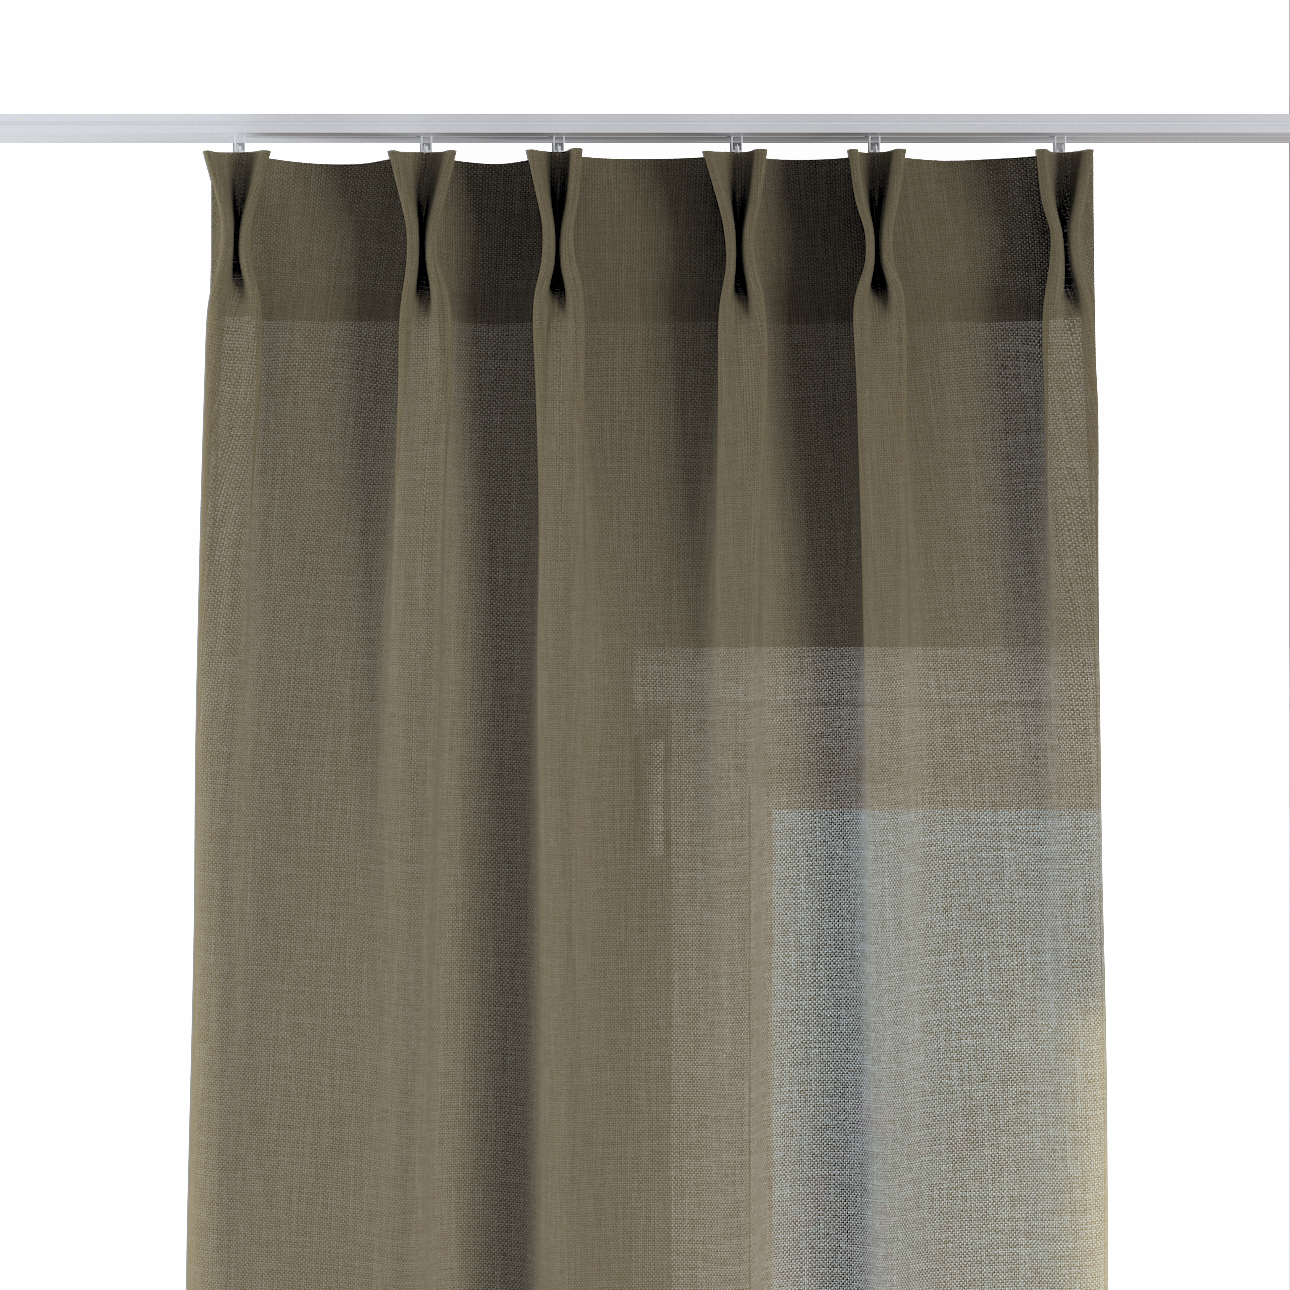 Vorhang mit flämischen 2-er Falten, khaki, Sensual Premium (144-41) günstig online kaufen